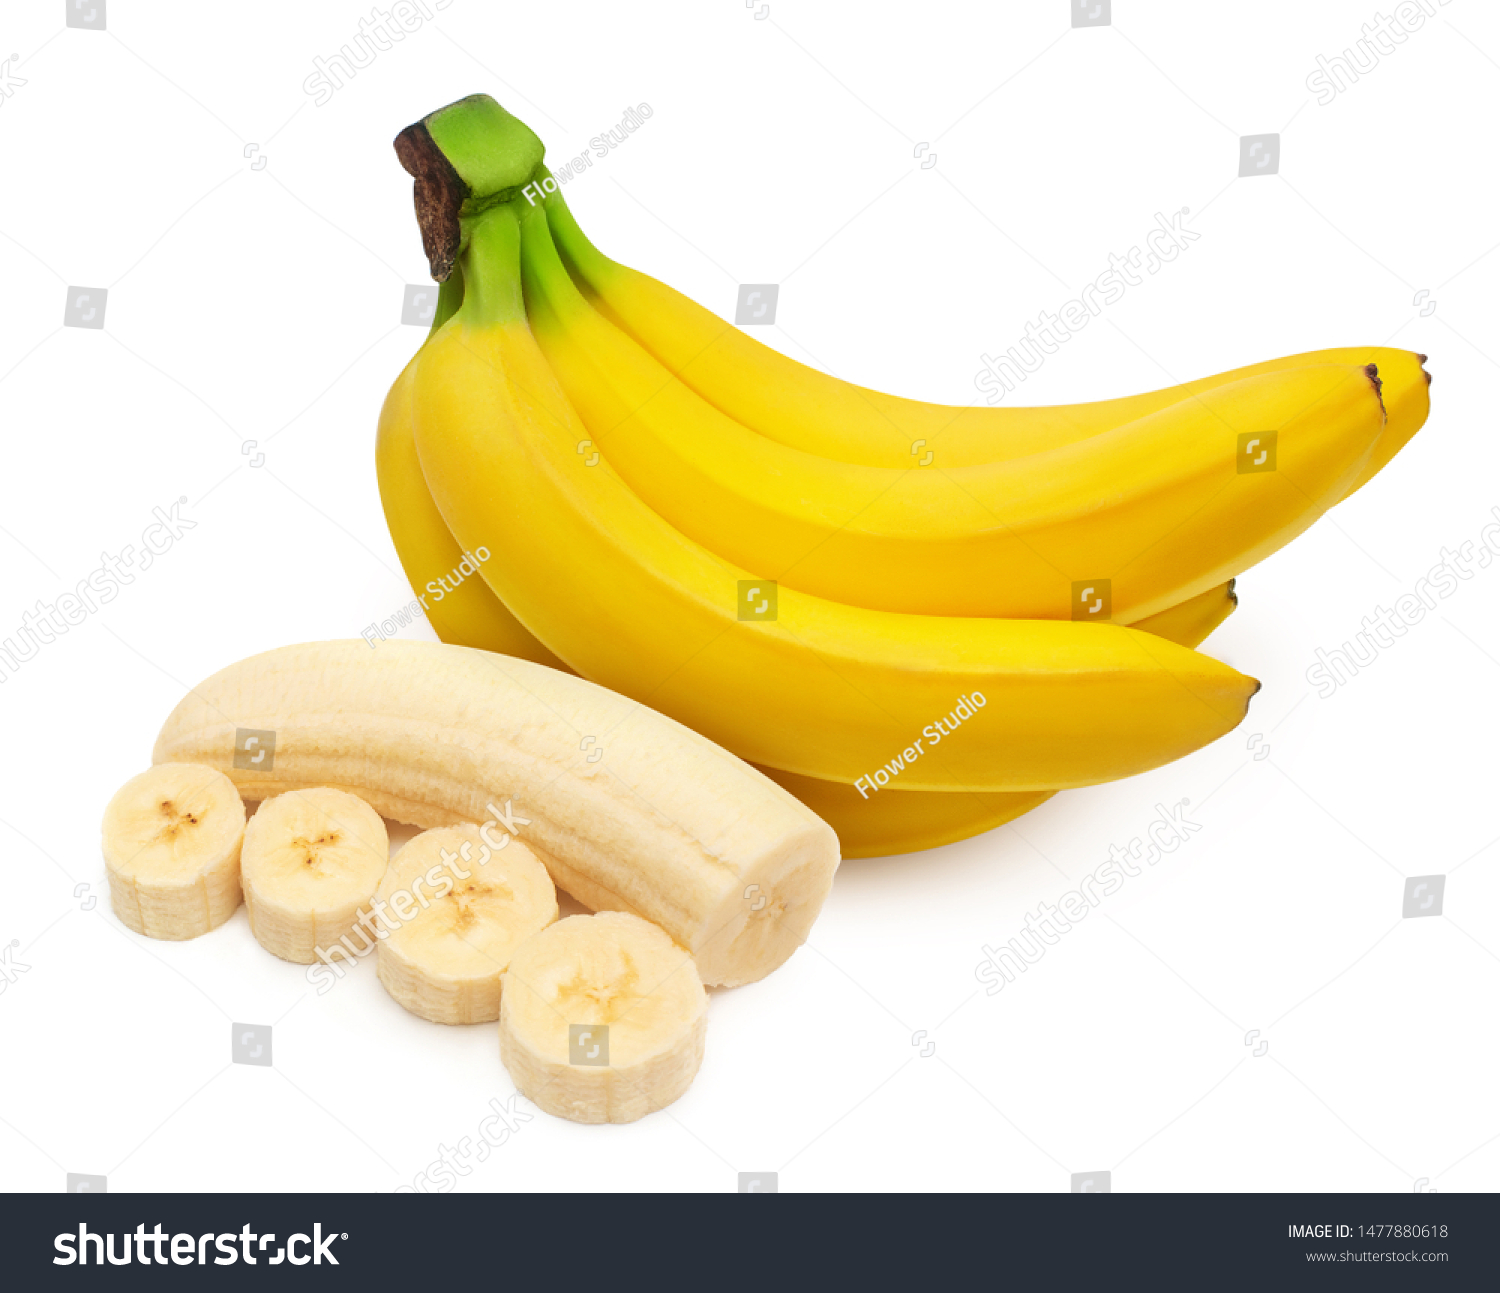 Banana Bunch Banana Without Peel Half Stock Photo (Edit Now) 1477880618.